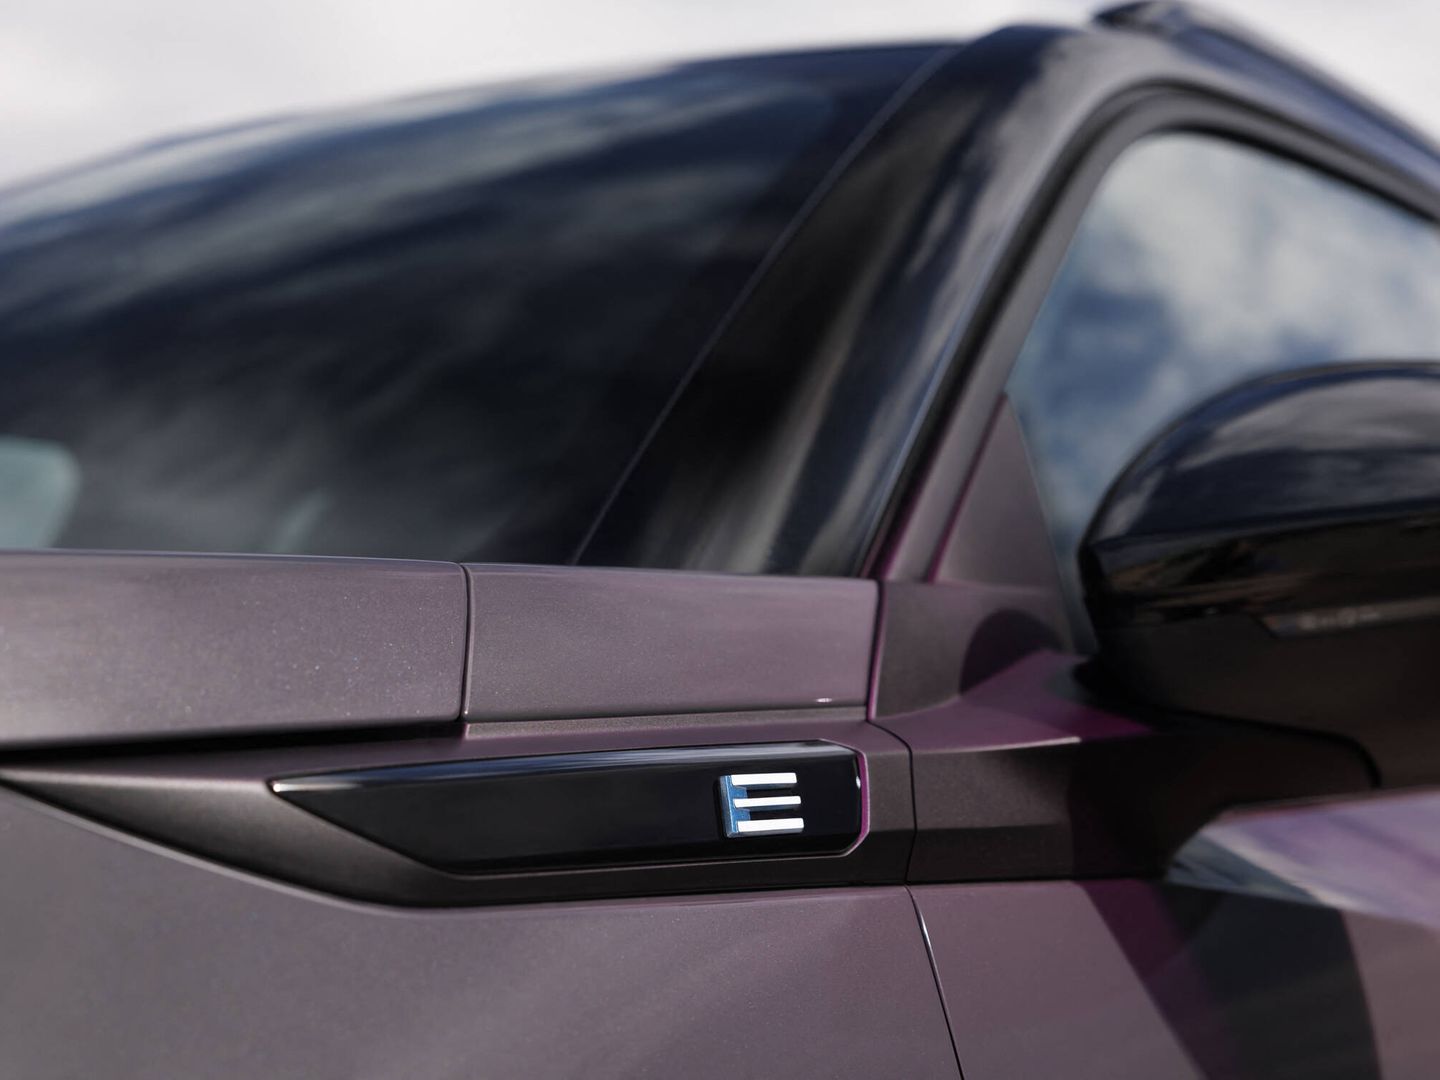 El emblema E en el lateral del vehículo, indica que estamos ante un e-2008 eléctrico.